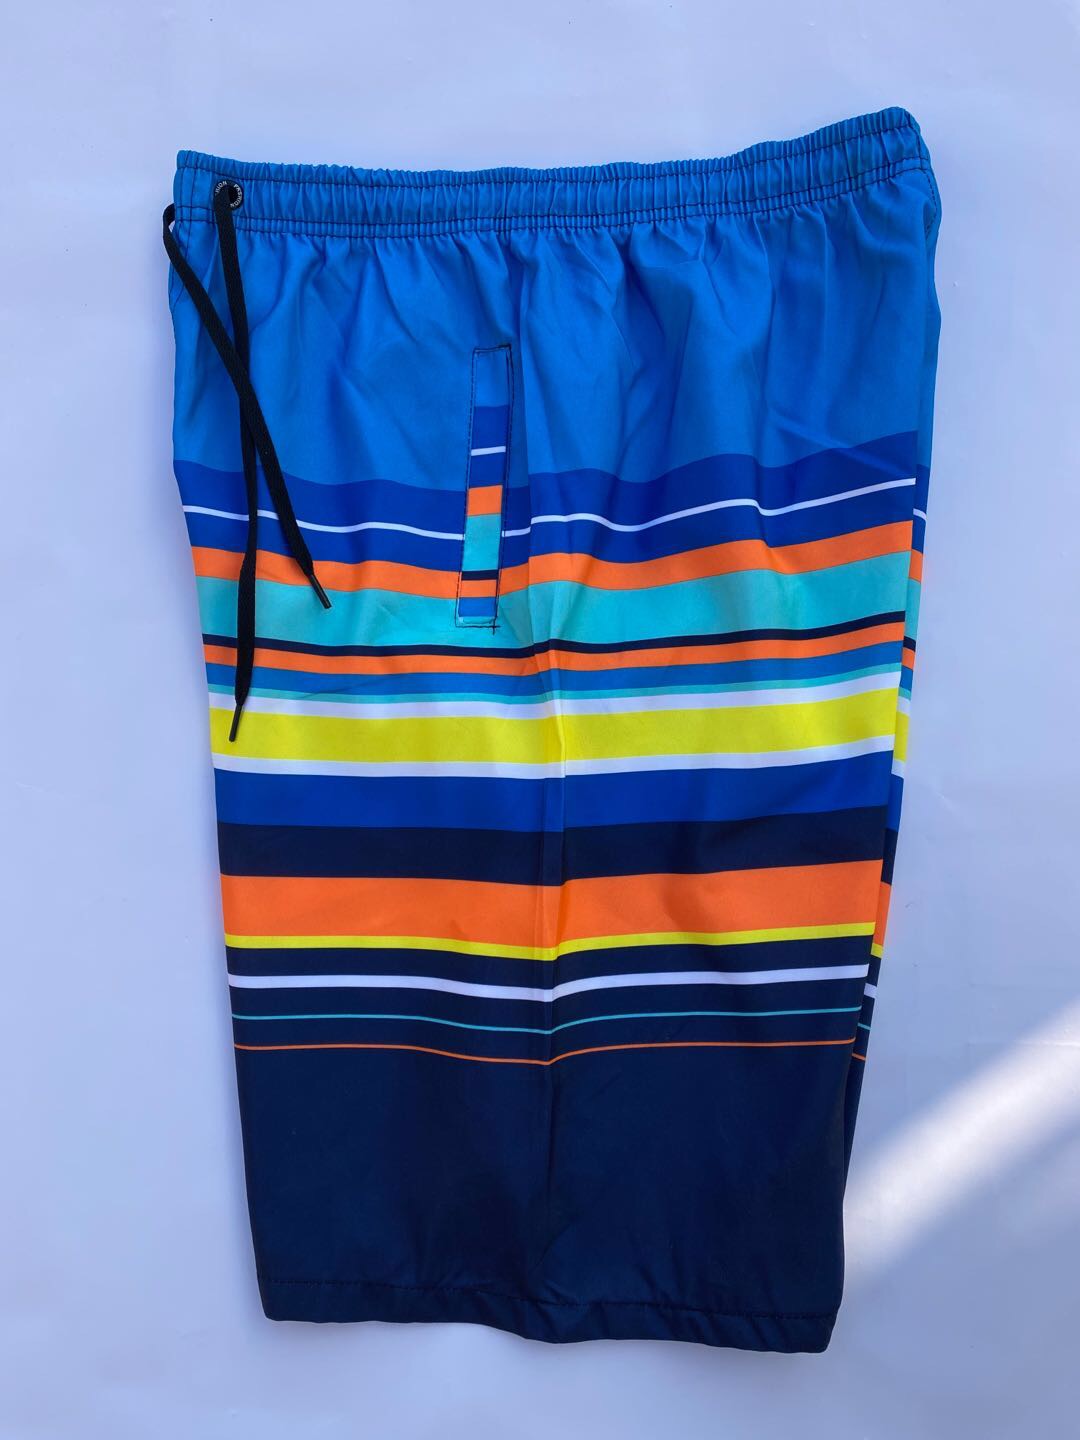 夏季潮流时尚沙滩裤男士ins休闲短裤流行青少年宽松五分裤彩色条纹细节图